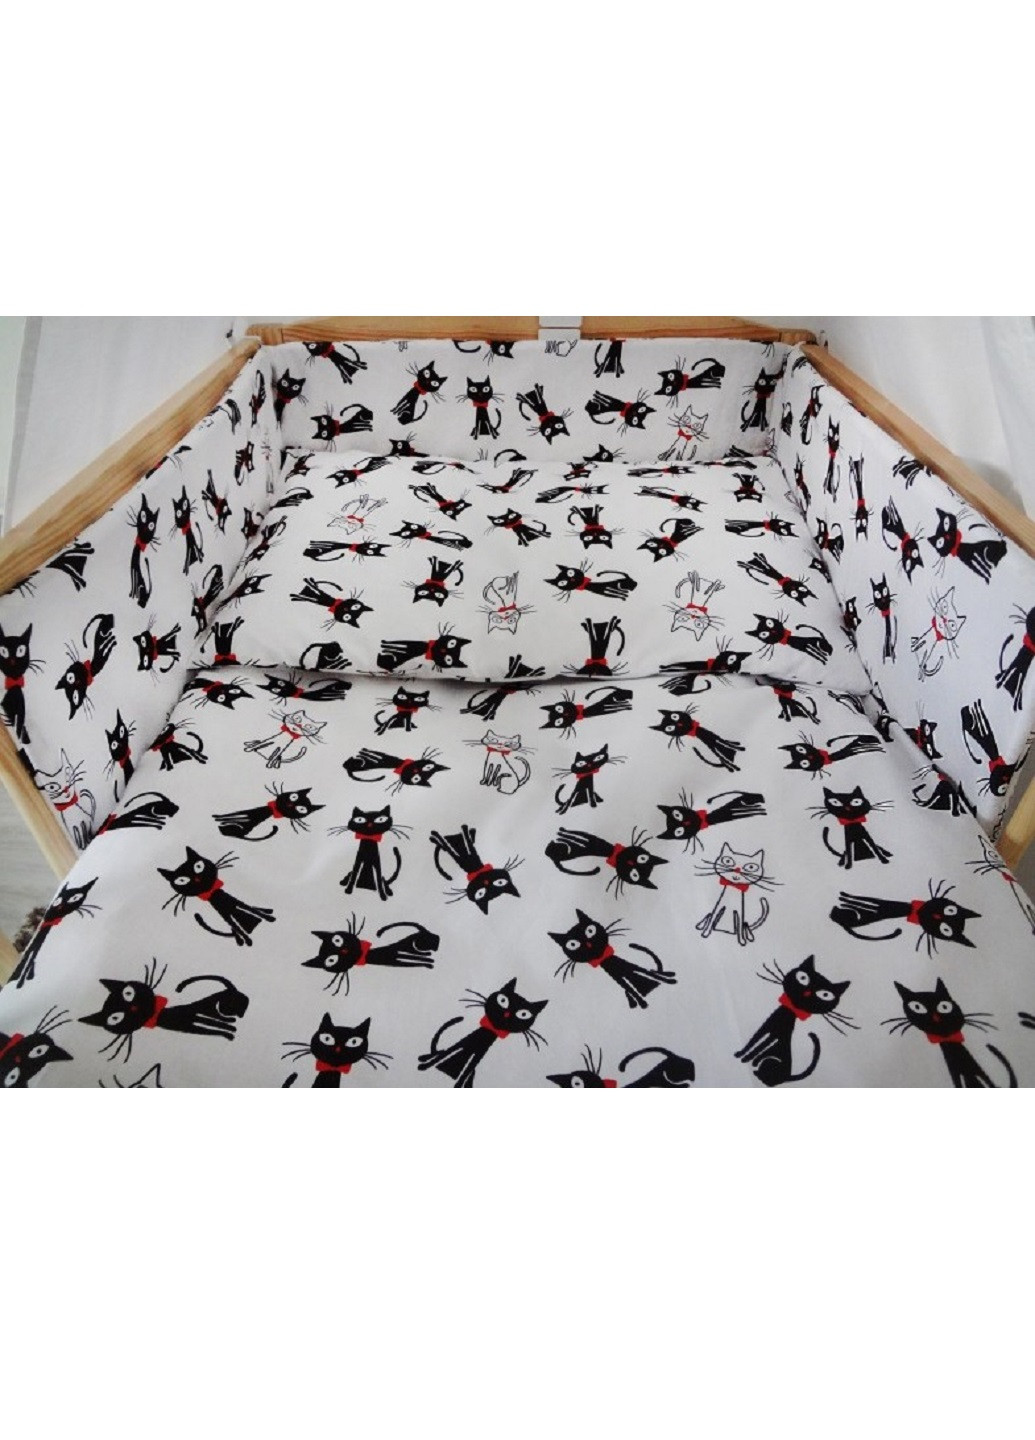 Комплект в детскую кроватку кровать люльку набор бортики защита по всему периметру постельное белье ручной работы (28542-Нов) Unbranded (253162754)